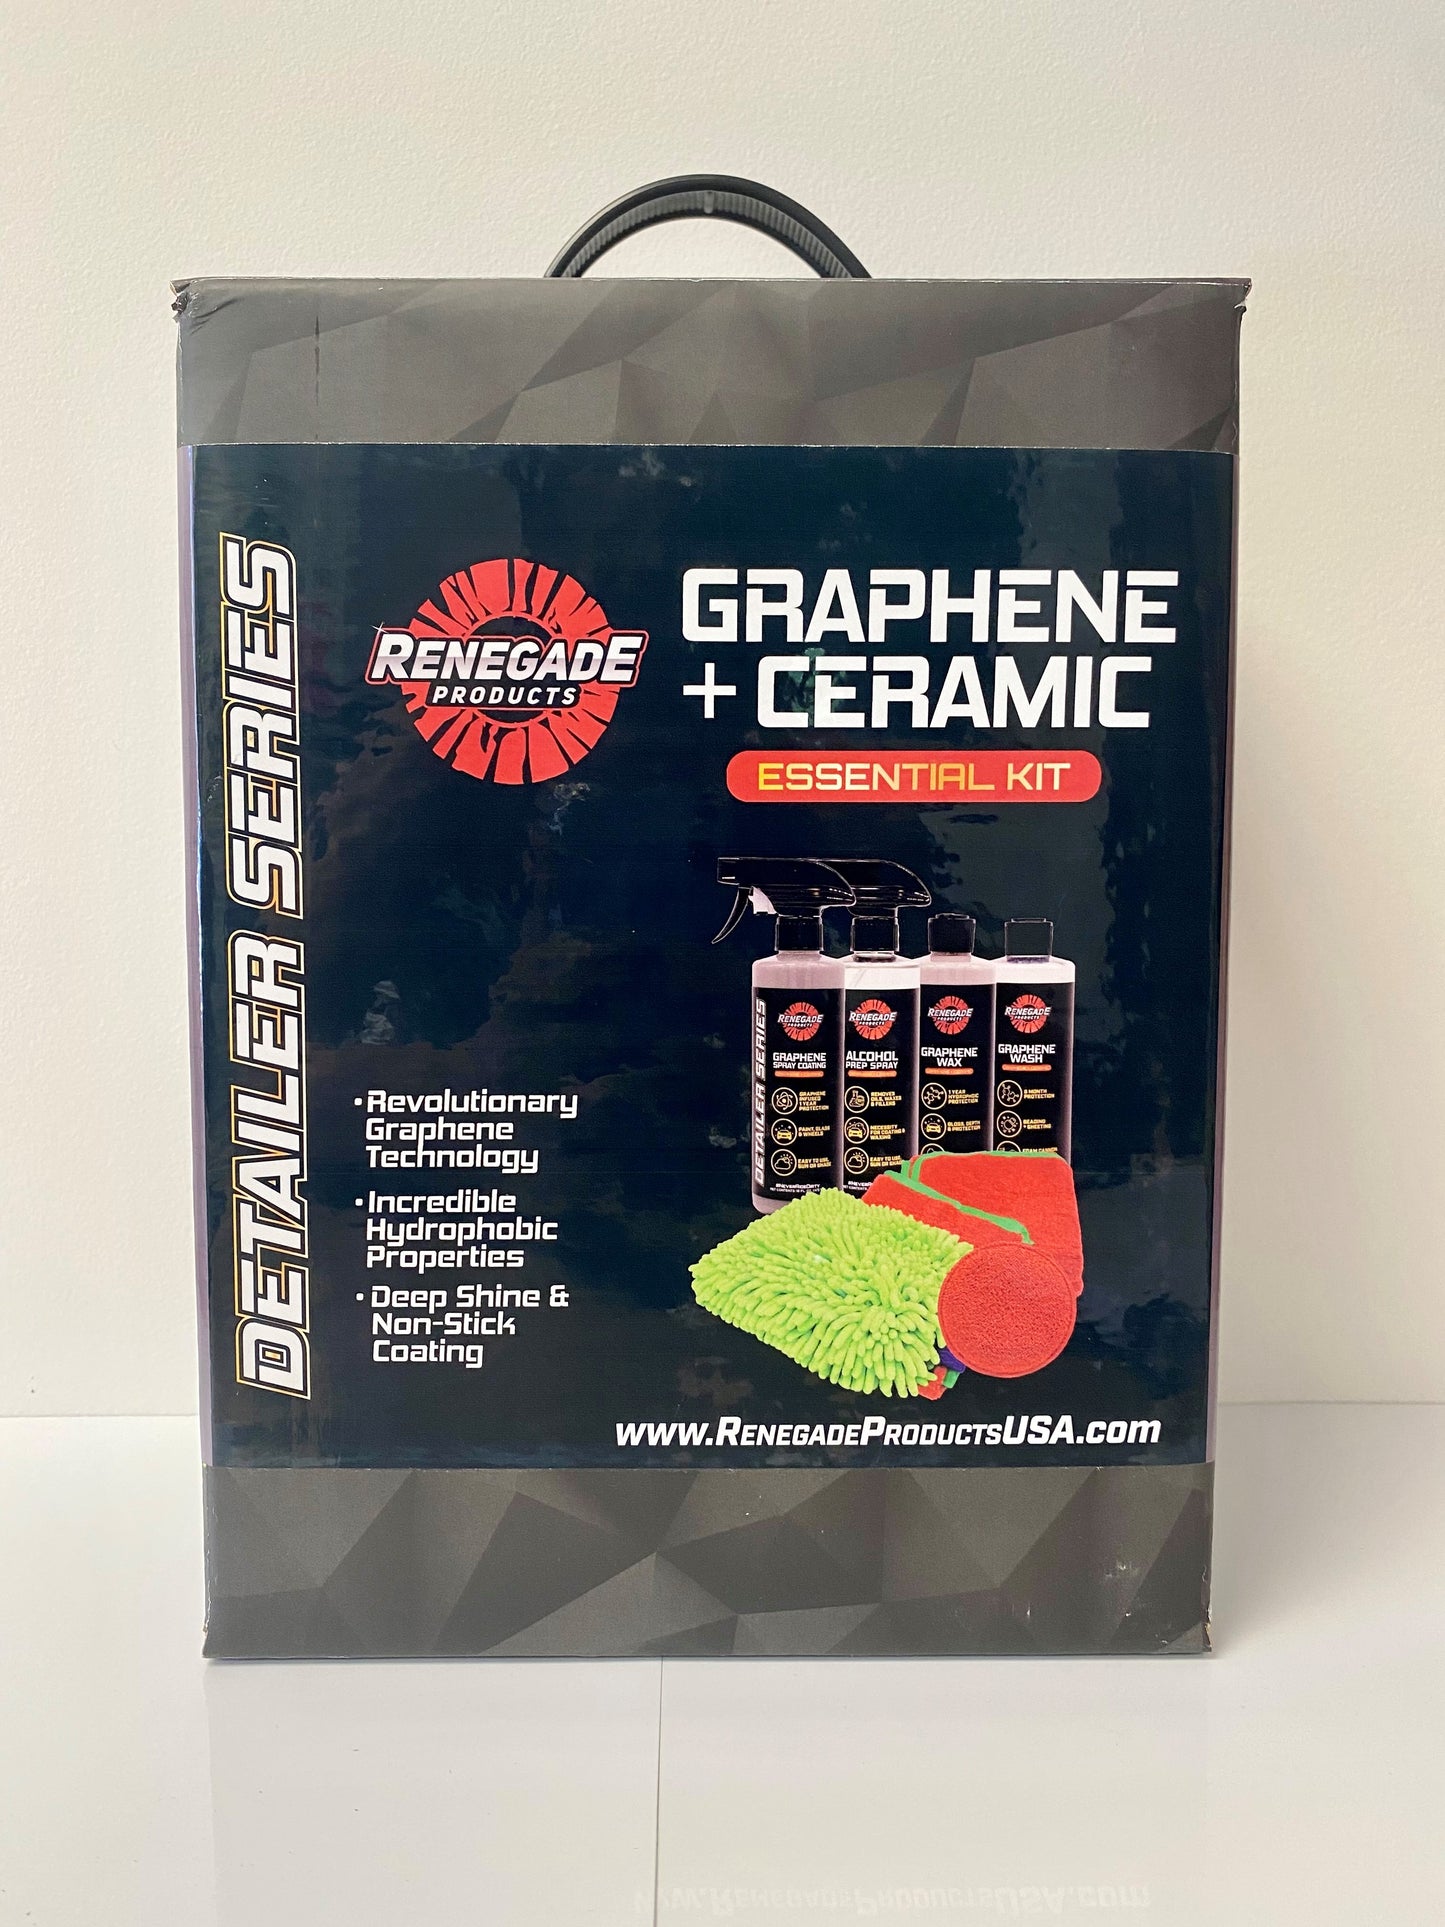 Renegade Graphene + Ceramic Essential Kit